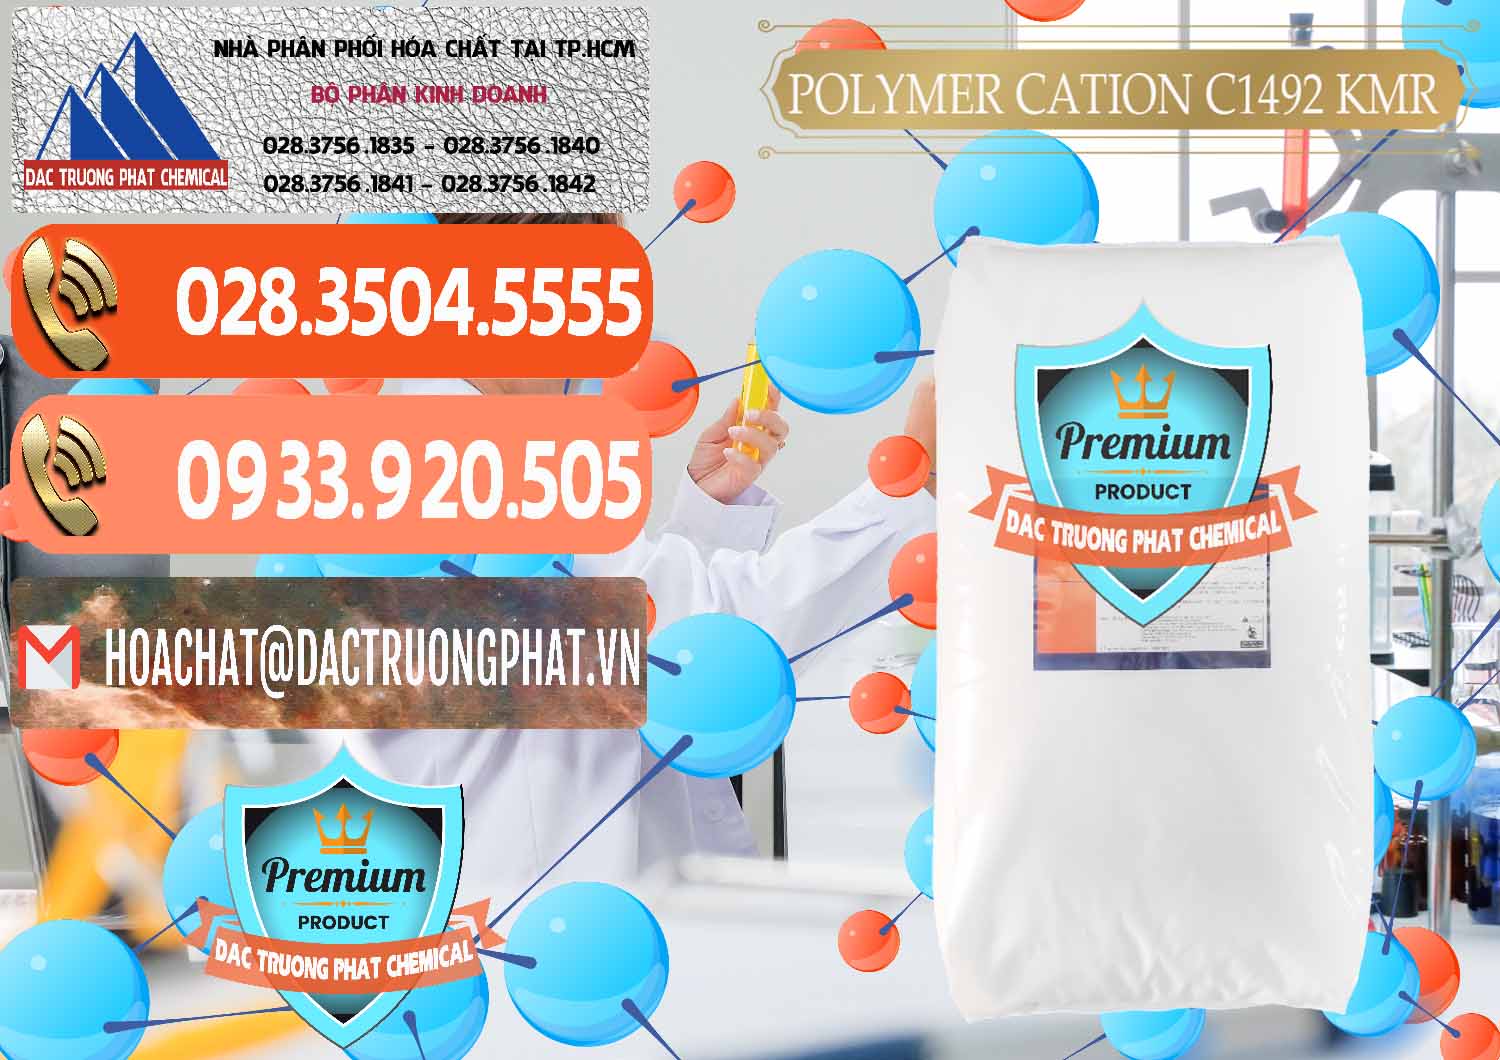 Cty chuyên phân phối _ bán Polymer Cation C1492 - KMR Anh Quốc England - 0121 - Đơn vị phân phối & cung cấp hóa chất tại TP.HCM - hoachatmientay.com